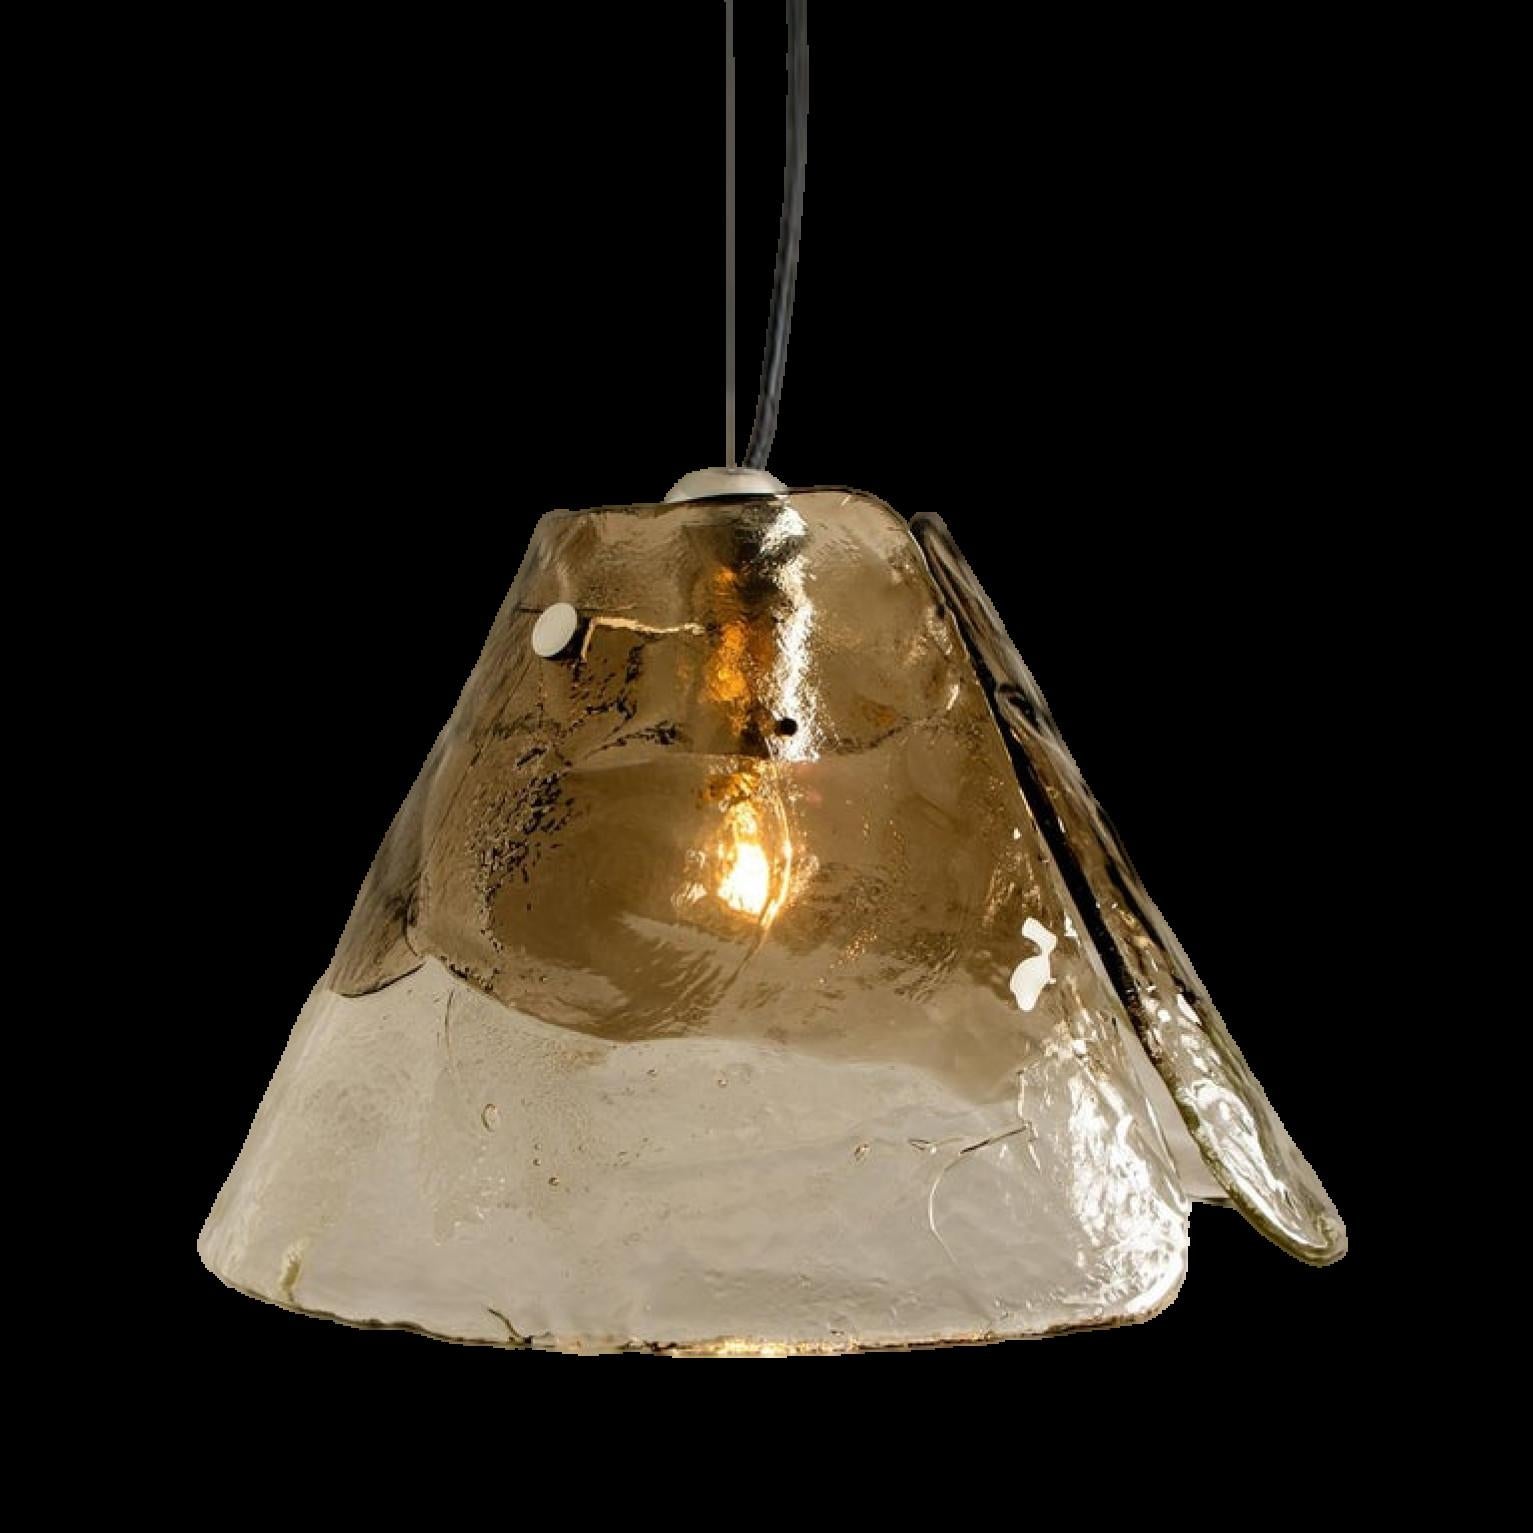 Lampe à suspension de Carlo Nason pour Mazzega.
Quatre feuilles cristallines et fumées composent cette belle pièce réalisée en épais verre de Murano fait à la main.

Dimensions : H 15.3